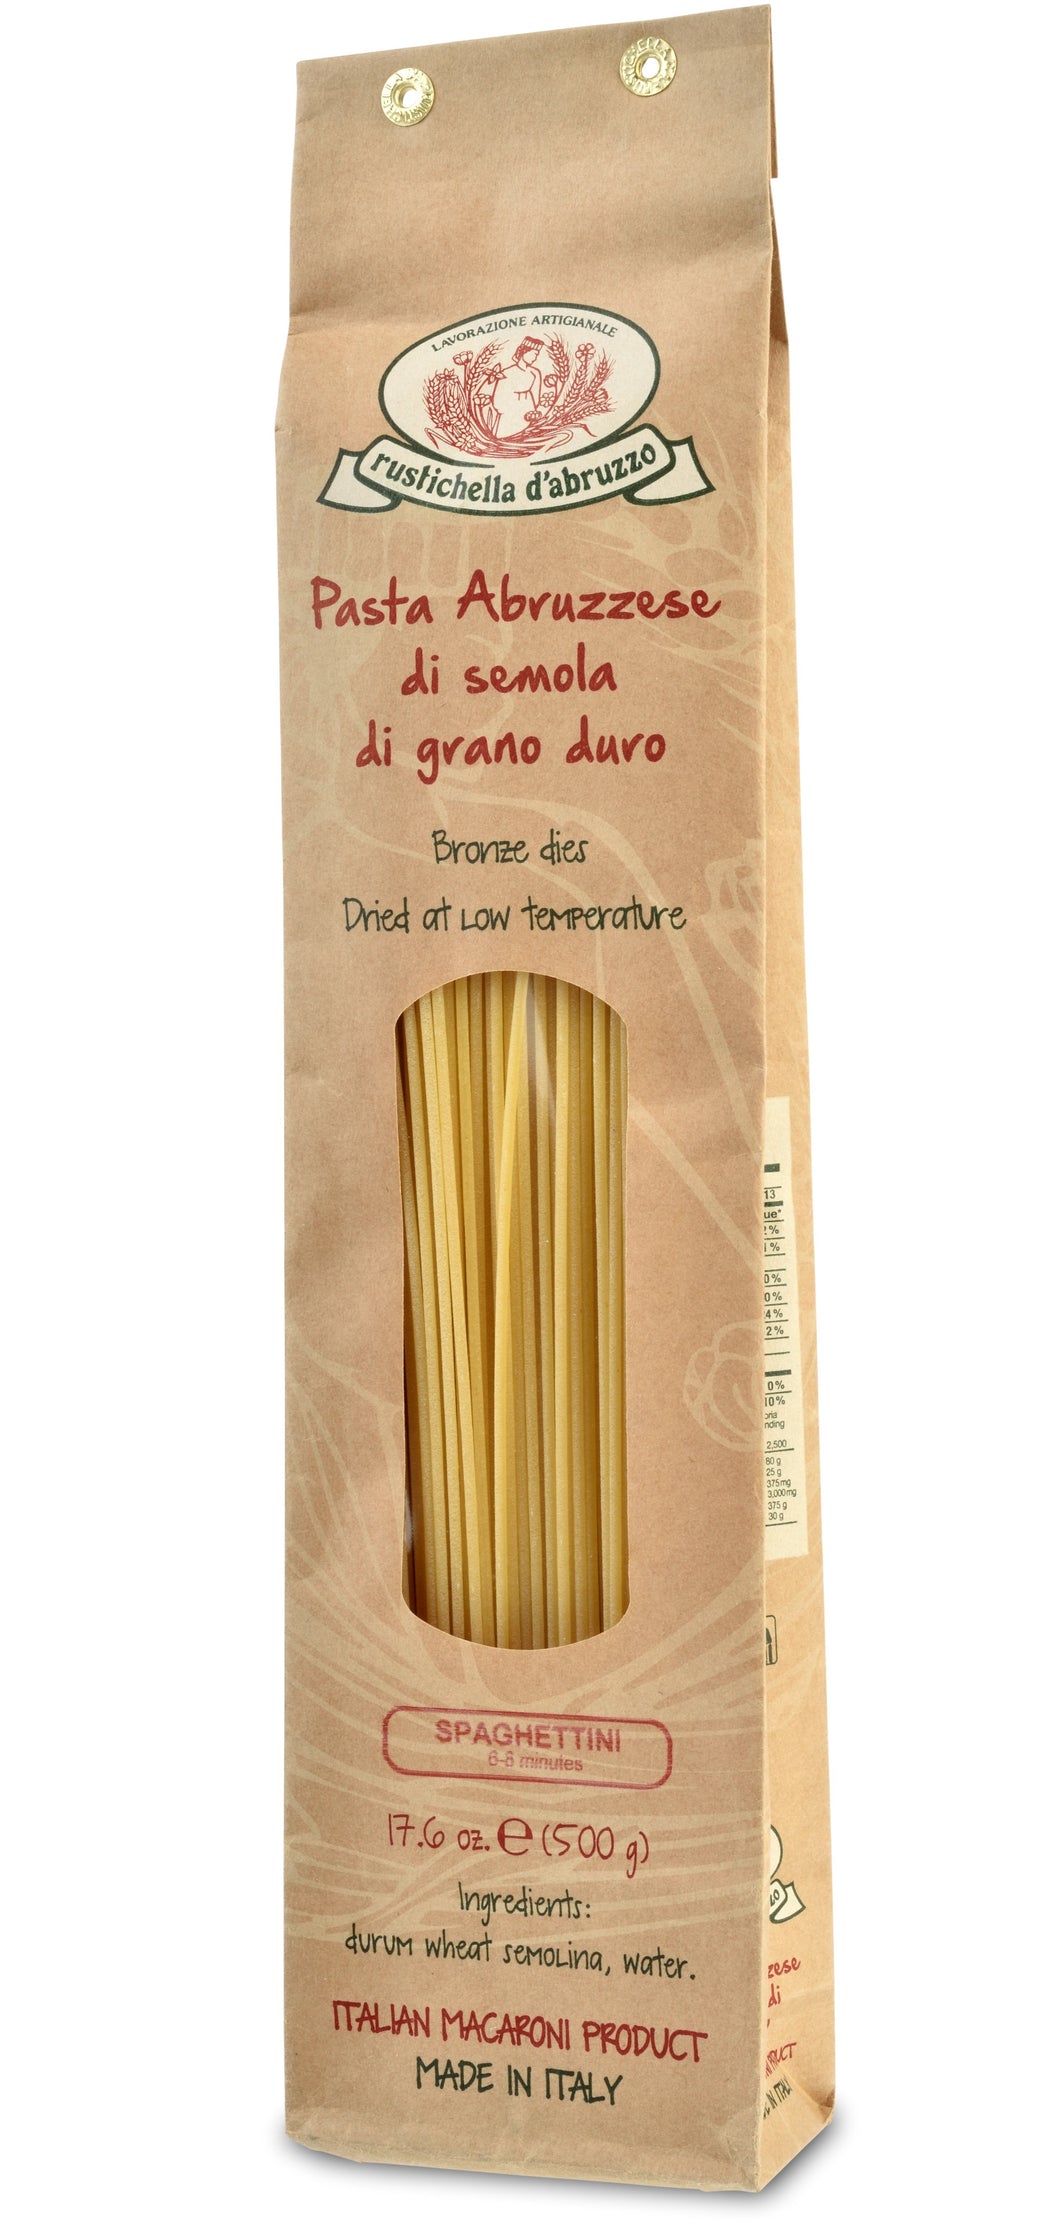 Spaghettini Pasta from Rustichella d'Abruzzo